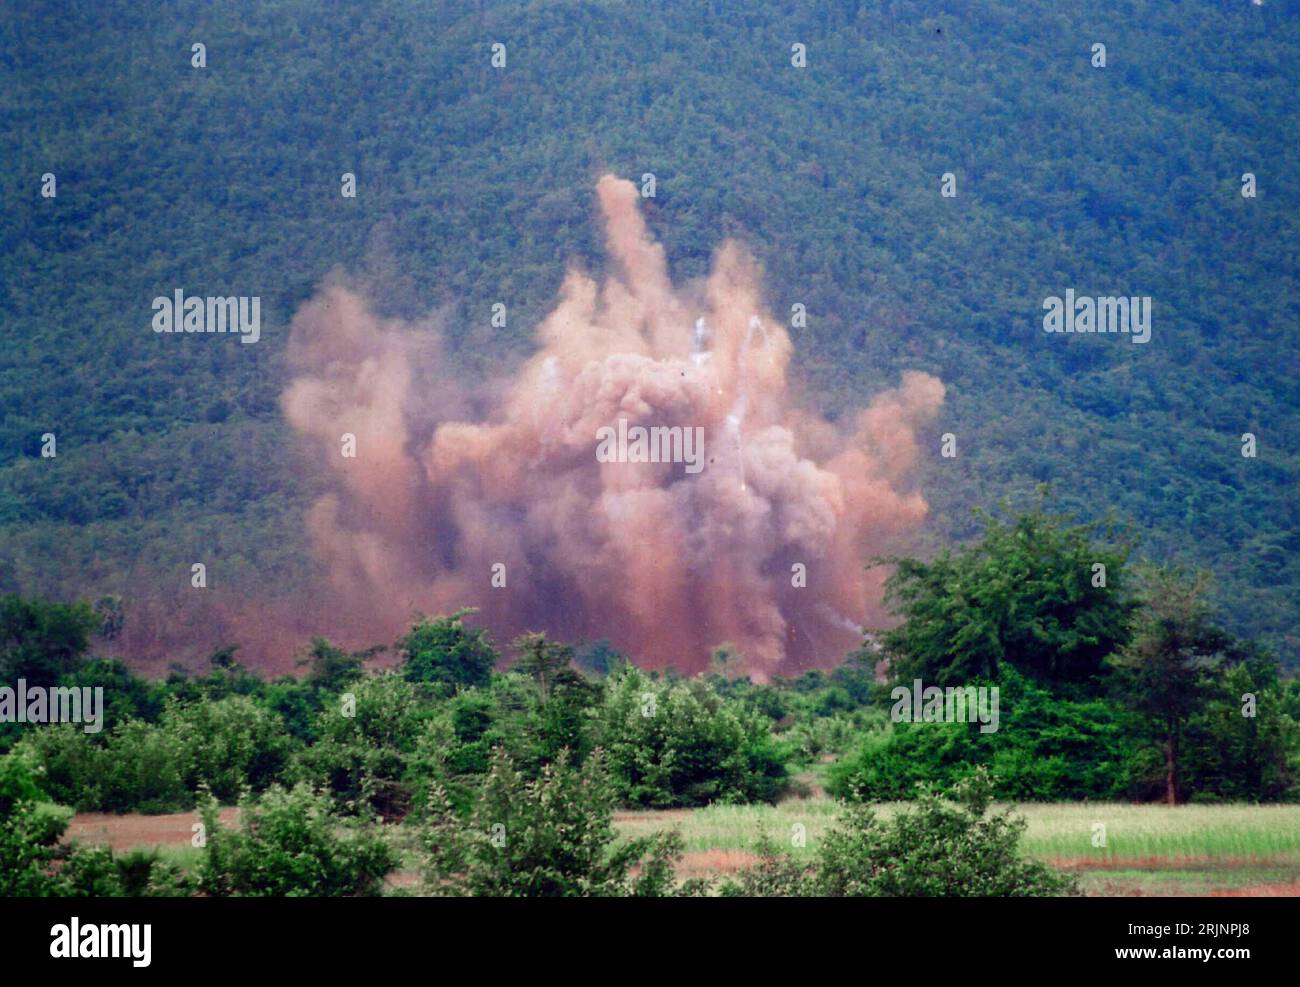 Bildnummer : 50991482 Datum : 18.11.2005 Copyright : imago/Xinhua Kambodschanische Militärs zerstören eine kürzlich auf einer Militärbasis (wieder-)entdeckte Rakete vom Typ C-125M (sa-3) in Kompong Speu - PUBLICATIONxNOTxINxCHN, Landschaft ; 2005, Kompong Speu, Raketen, Raketen, Zerstörung, sprengen, Sprengung, explosion, qualm, Rauch, Rauchwolke, Qualmwolke ; Kbdig, totale, Kambodscha, , Banque D'Images